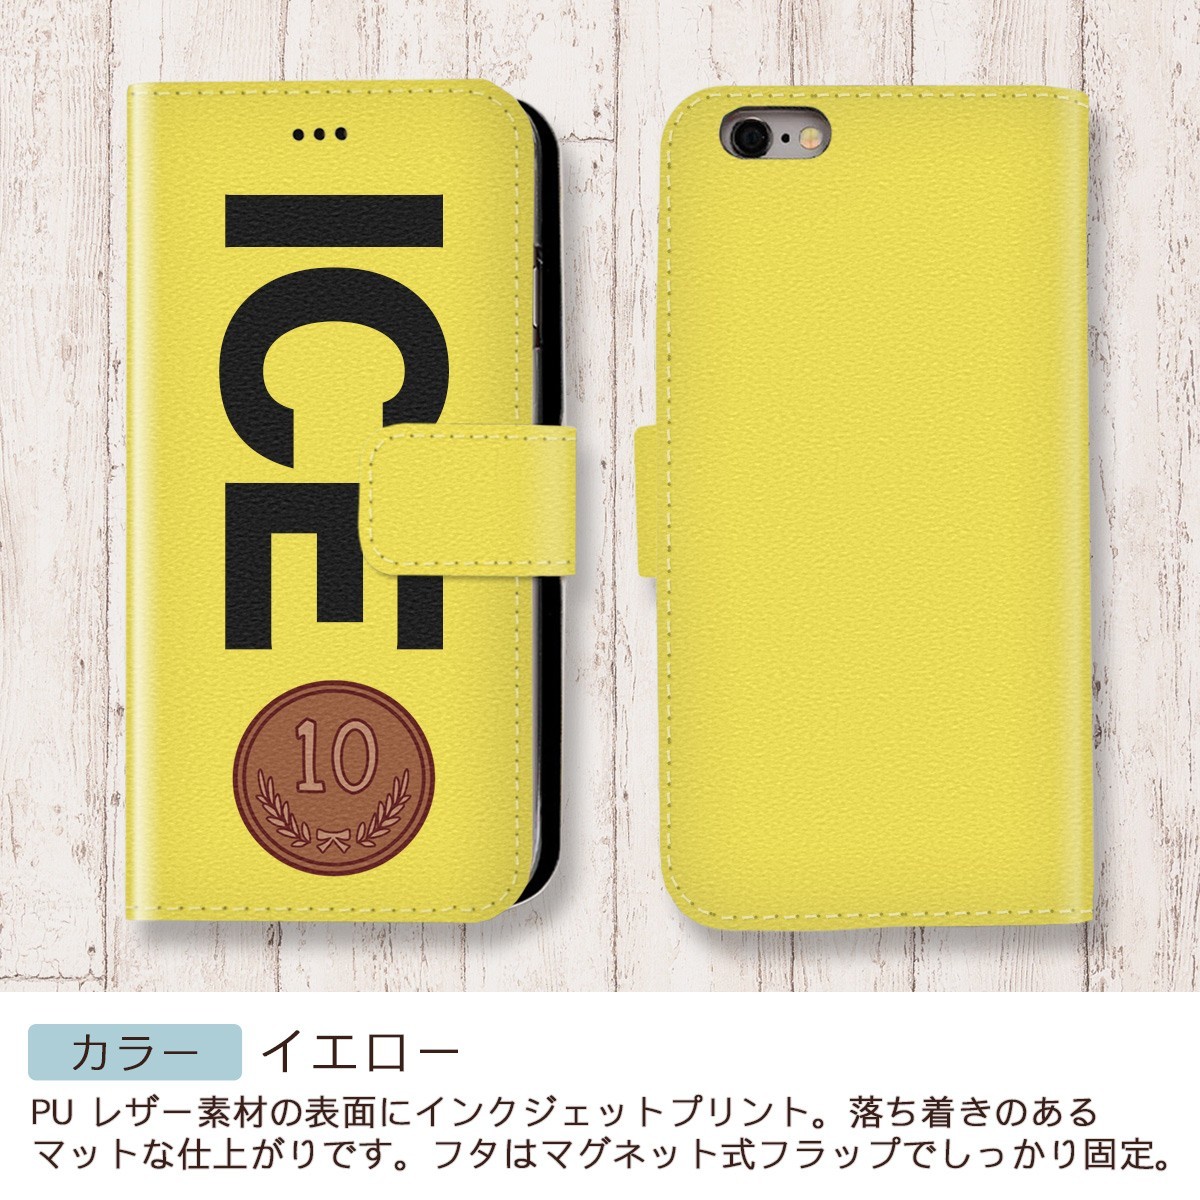 １０円玉 おもしろ X XSケース ケース iPhone X iPhone XS ケース 手帳型 アイフォン かわいい カッコイイ メンズ レディース_画像7